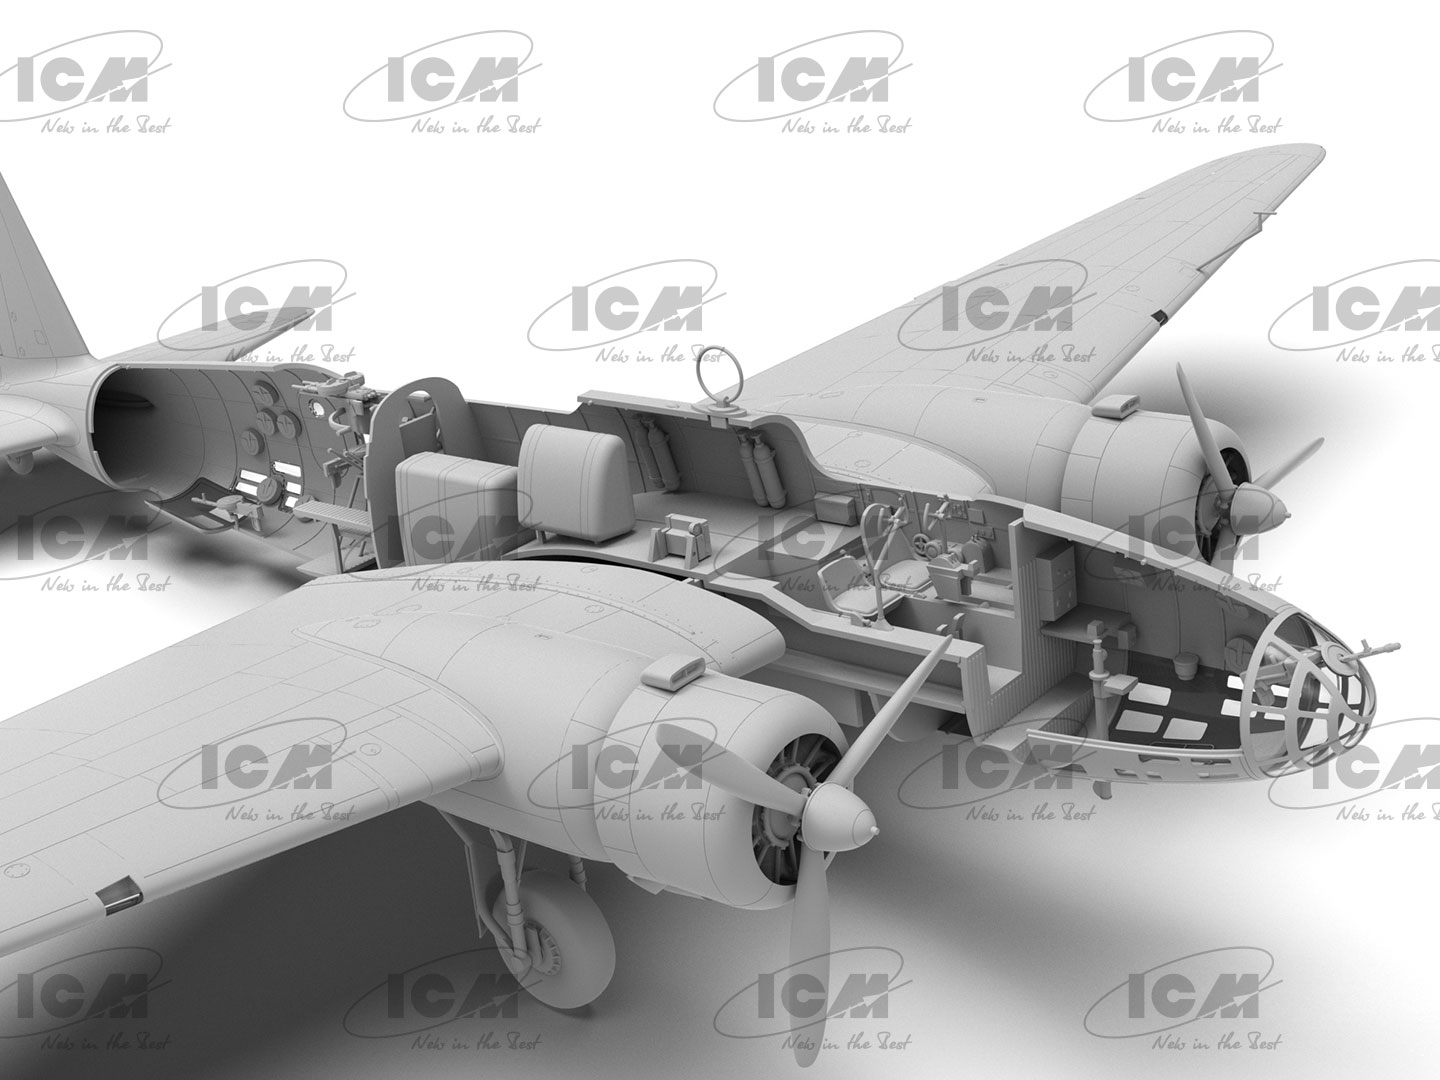 ICM 48195 - Ki-21-Ib 'Sally' Японский тяжелый бомбардировщик